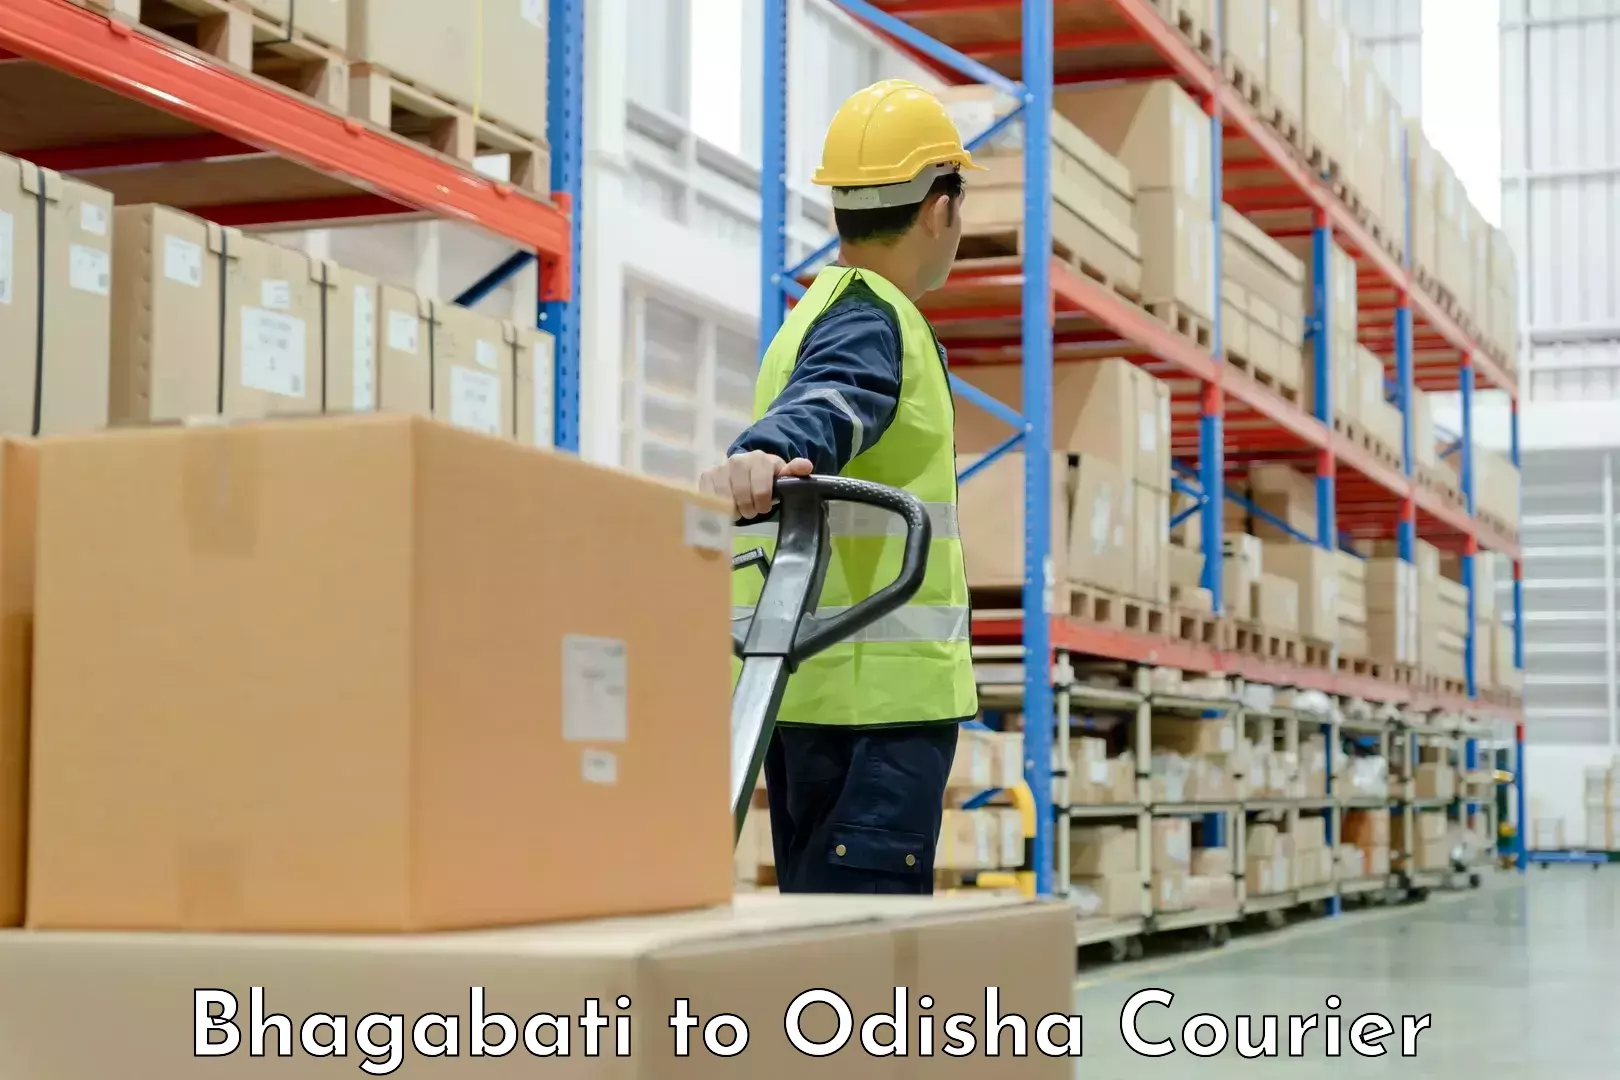 Customized moving experience Bhagabati to Odisha